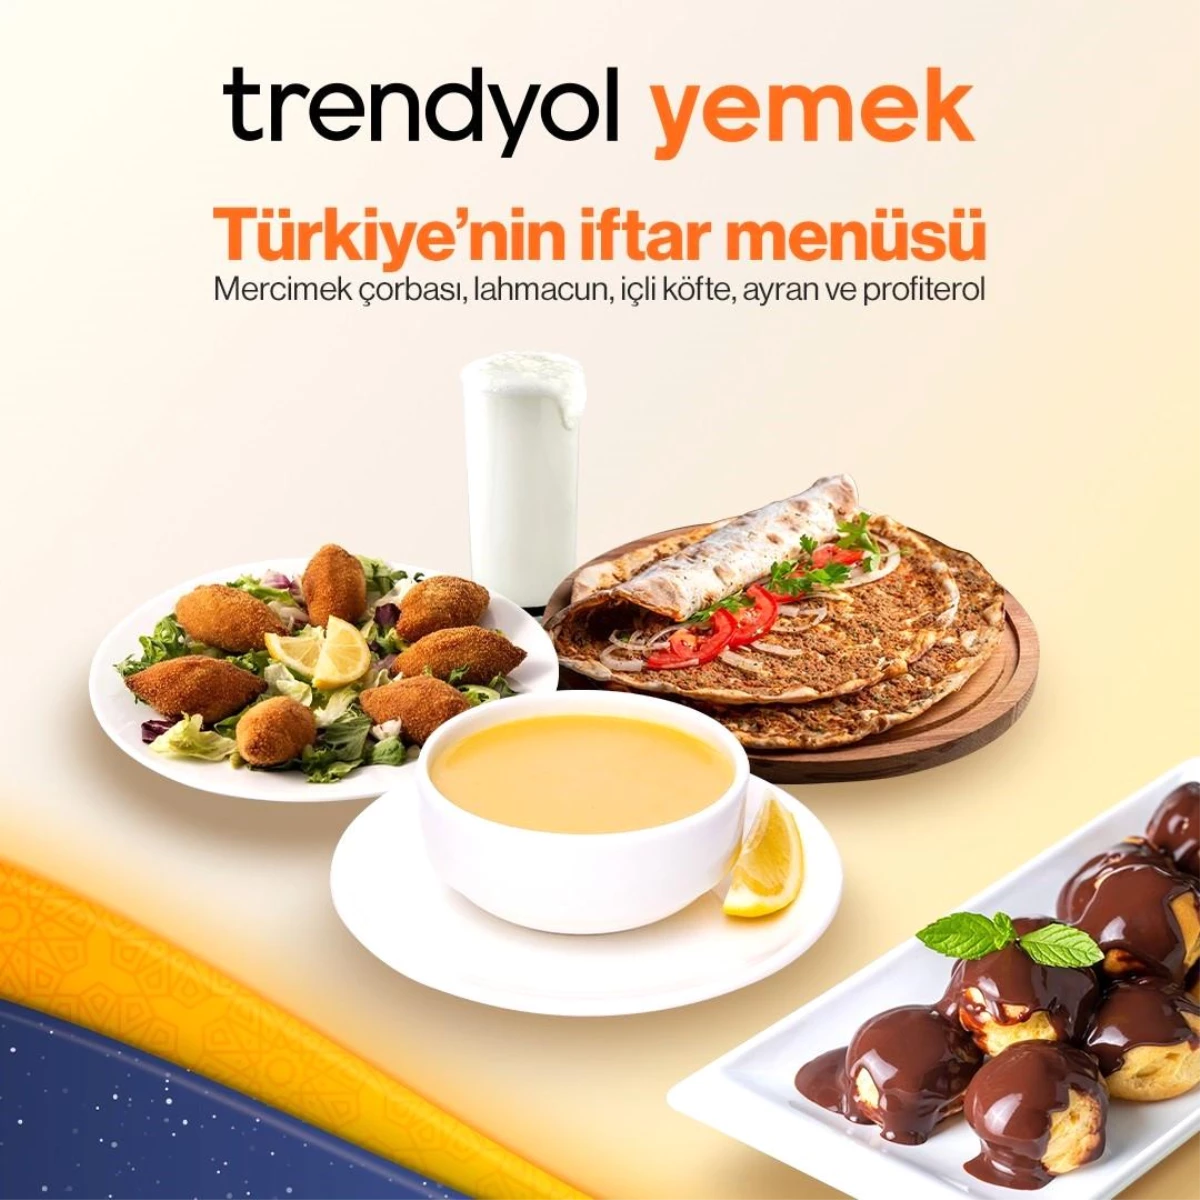 Trendyol Yemek Ramazan ayı trendlerini açıkladı